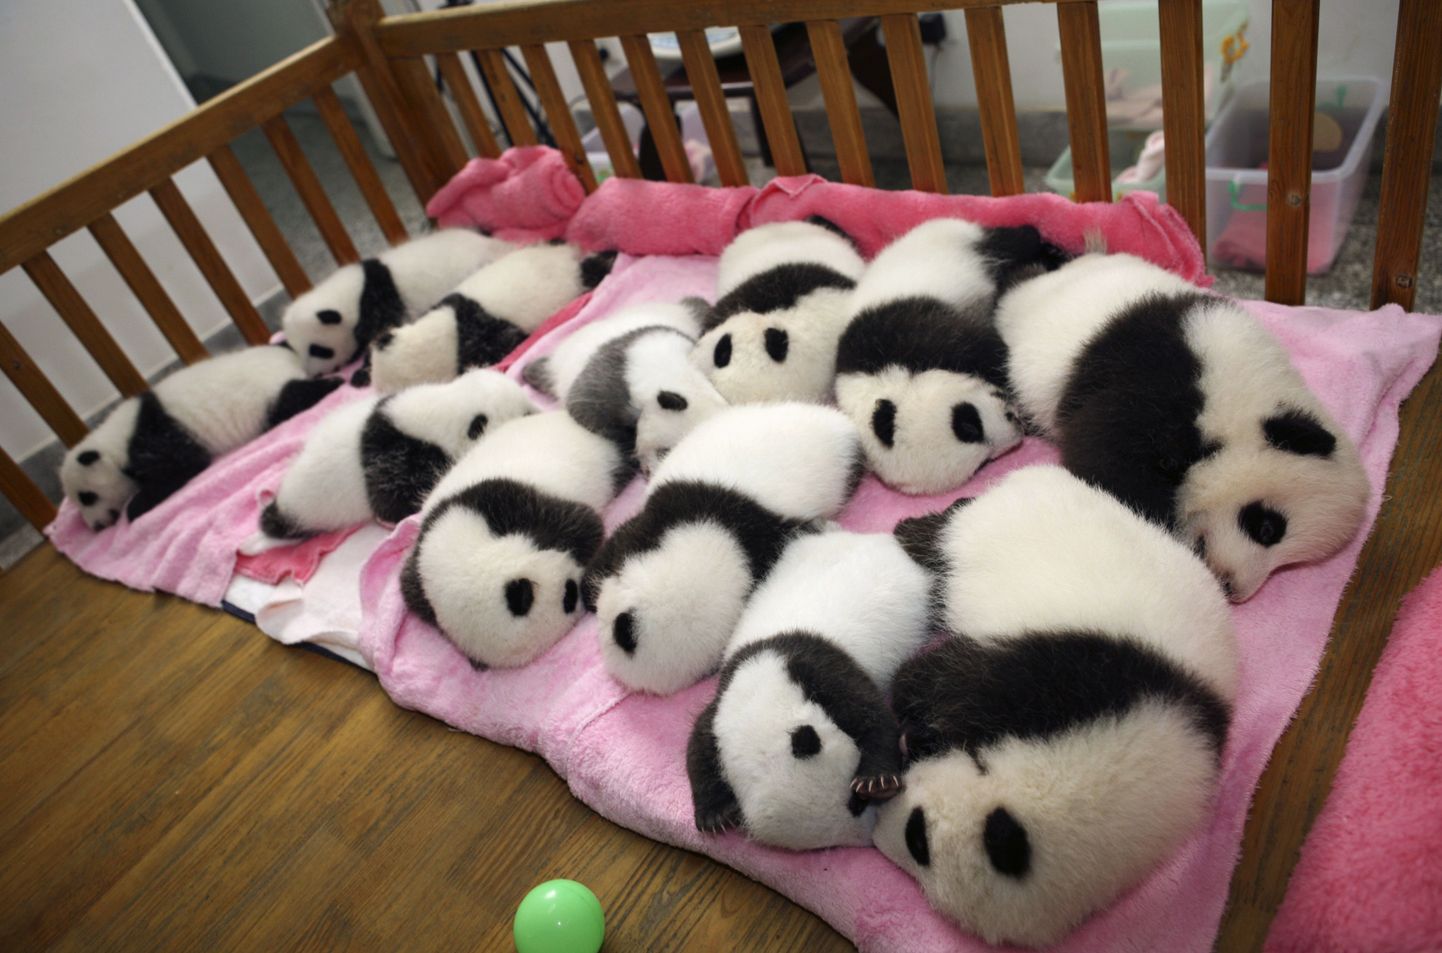 Esmaspäeval Chengdu pandaaretuskeskuses tehtud pilt 12 pandapojast.